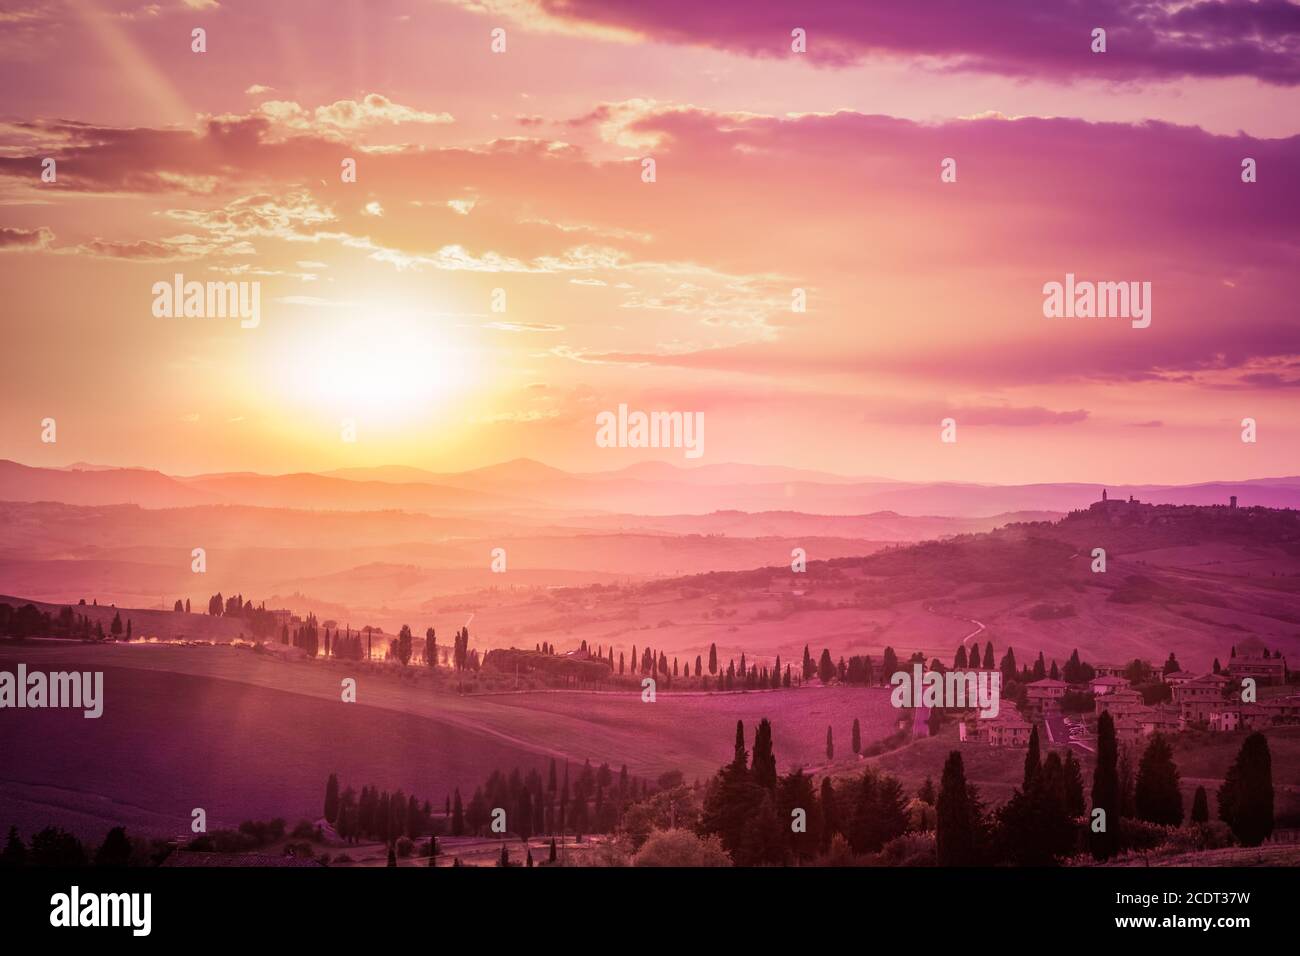 Meraviglioso paesaggio toscano con cipressi, fattorie e borghi medievali, Italia. Tramonto rosa e viola Foto Stock